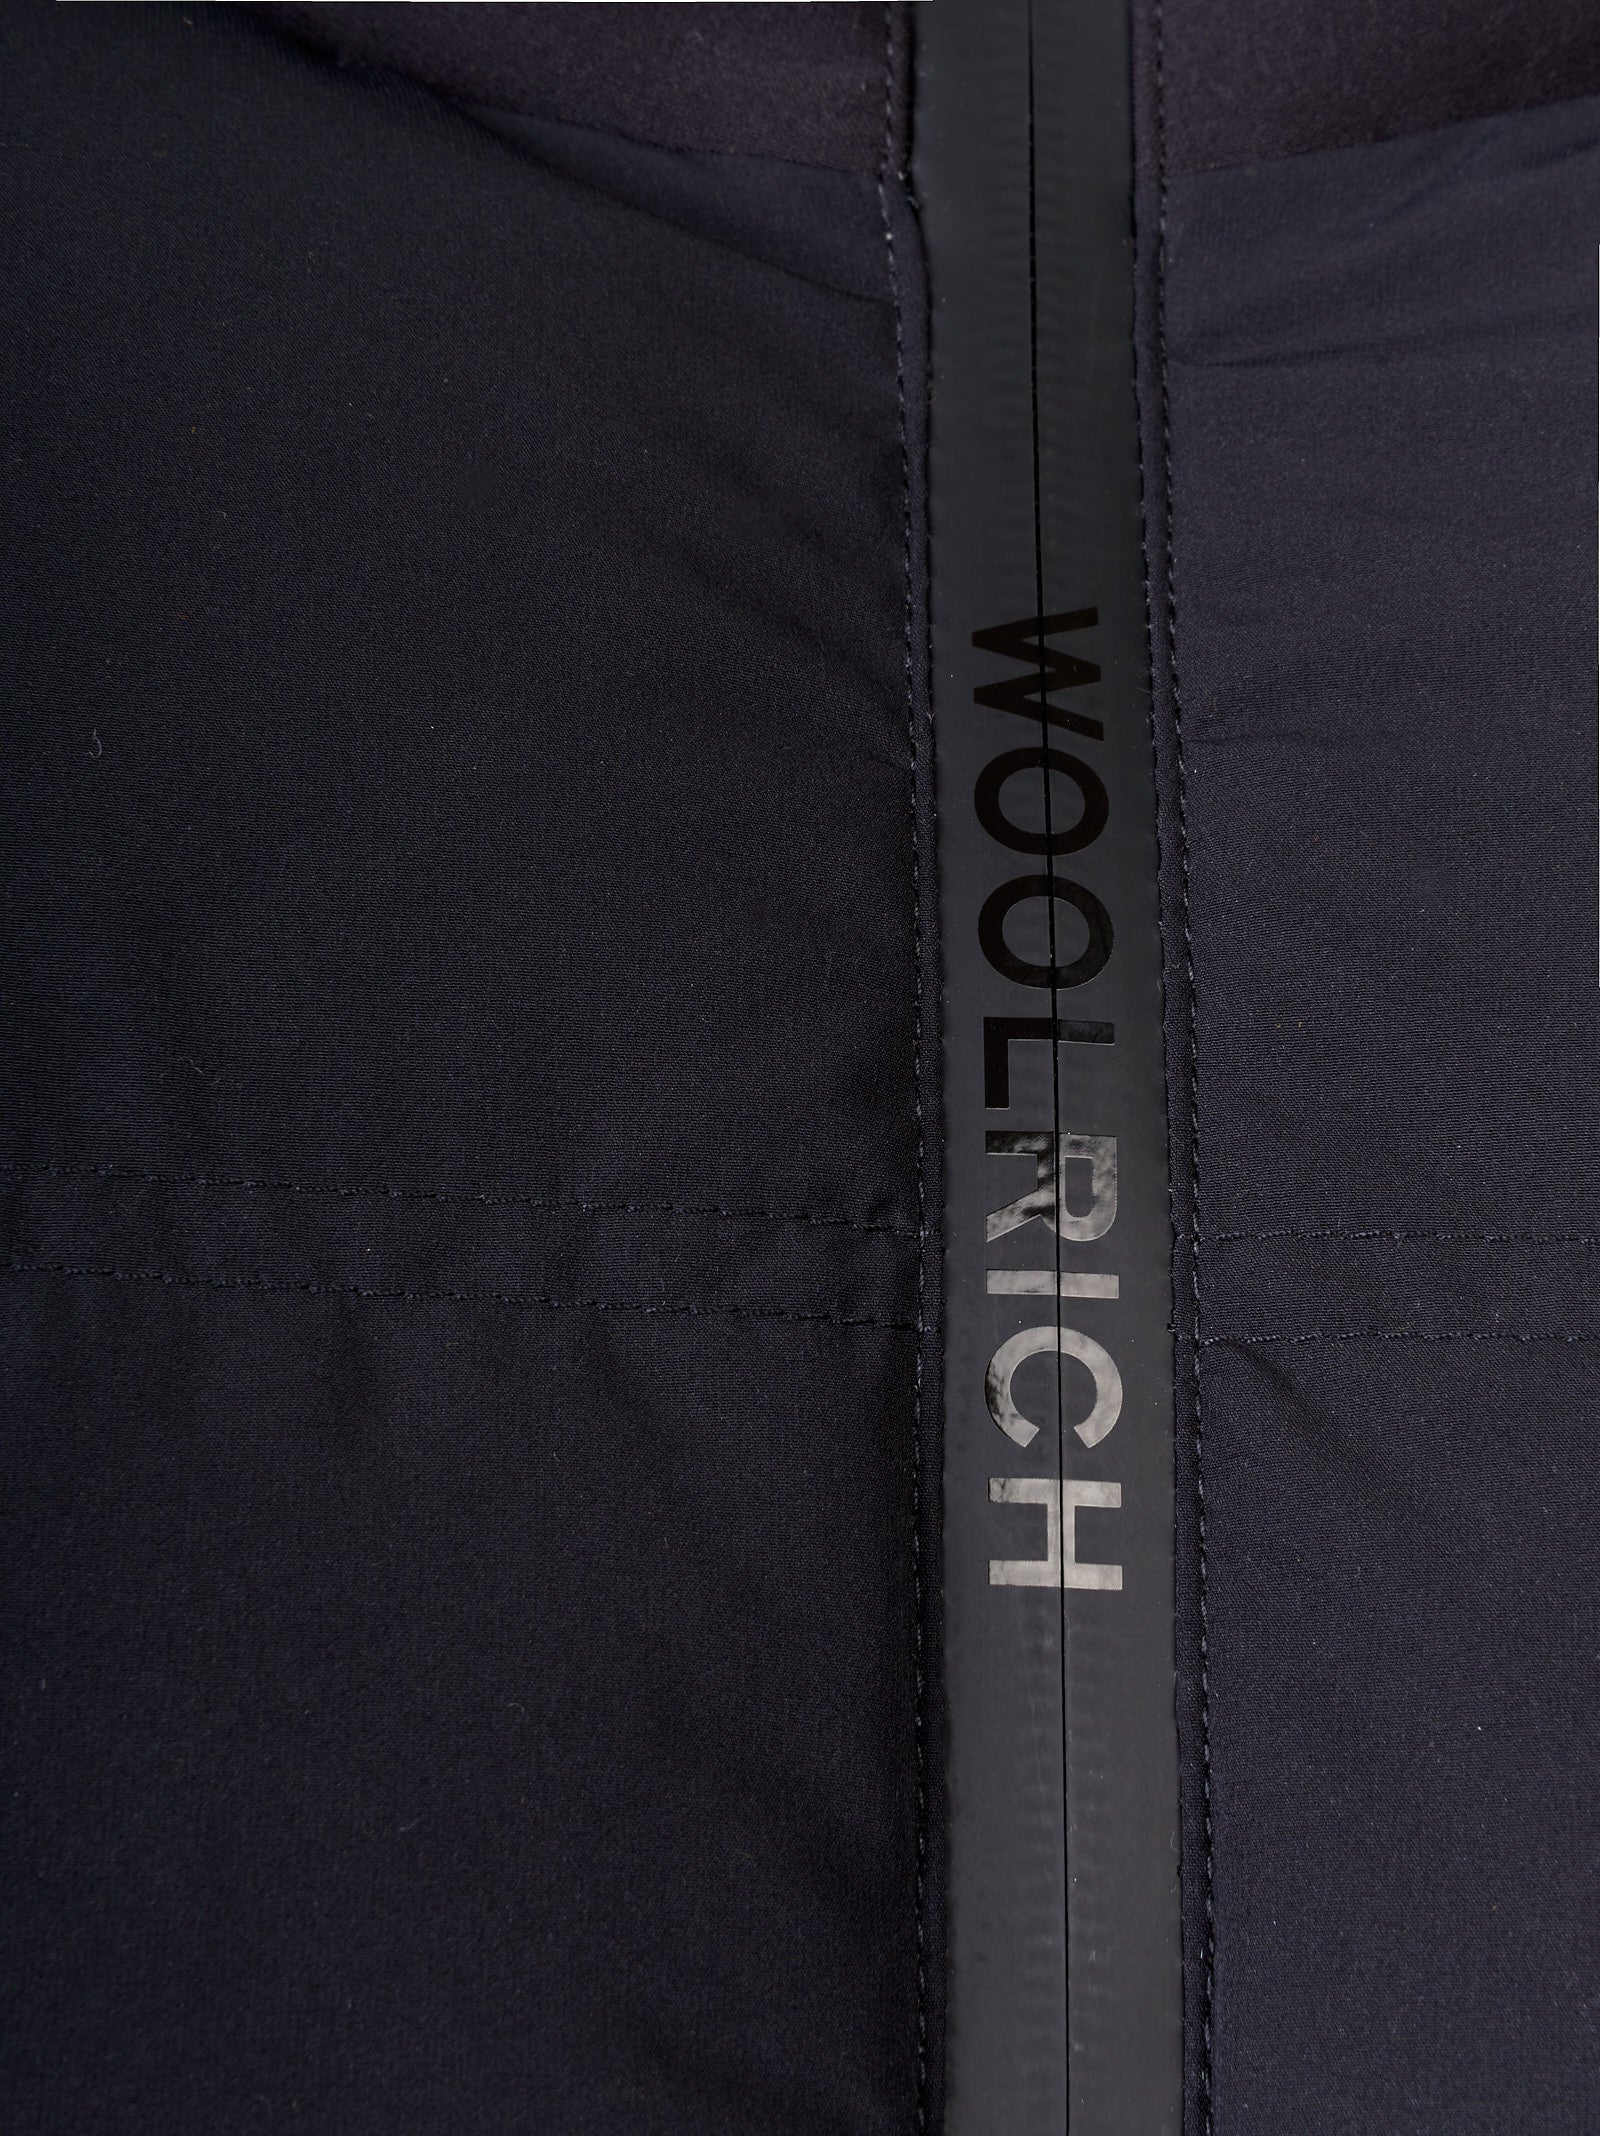 Giubbotto WOOLRICH Bering stretch jacket
Nero